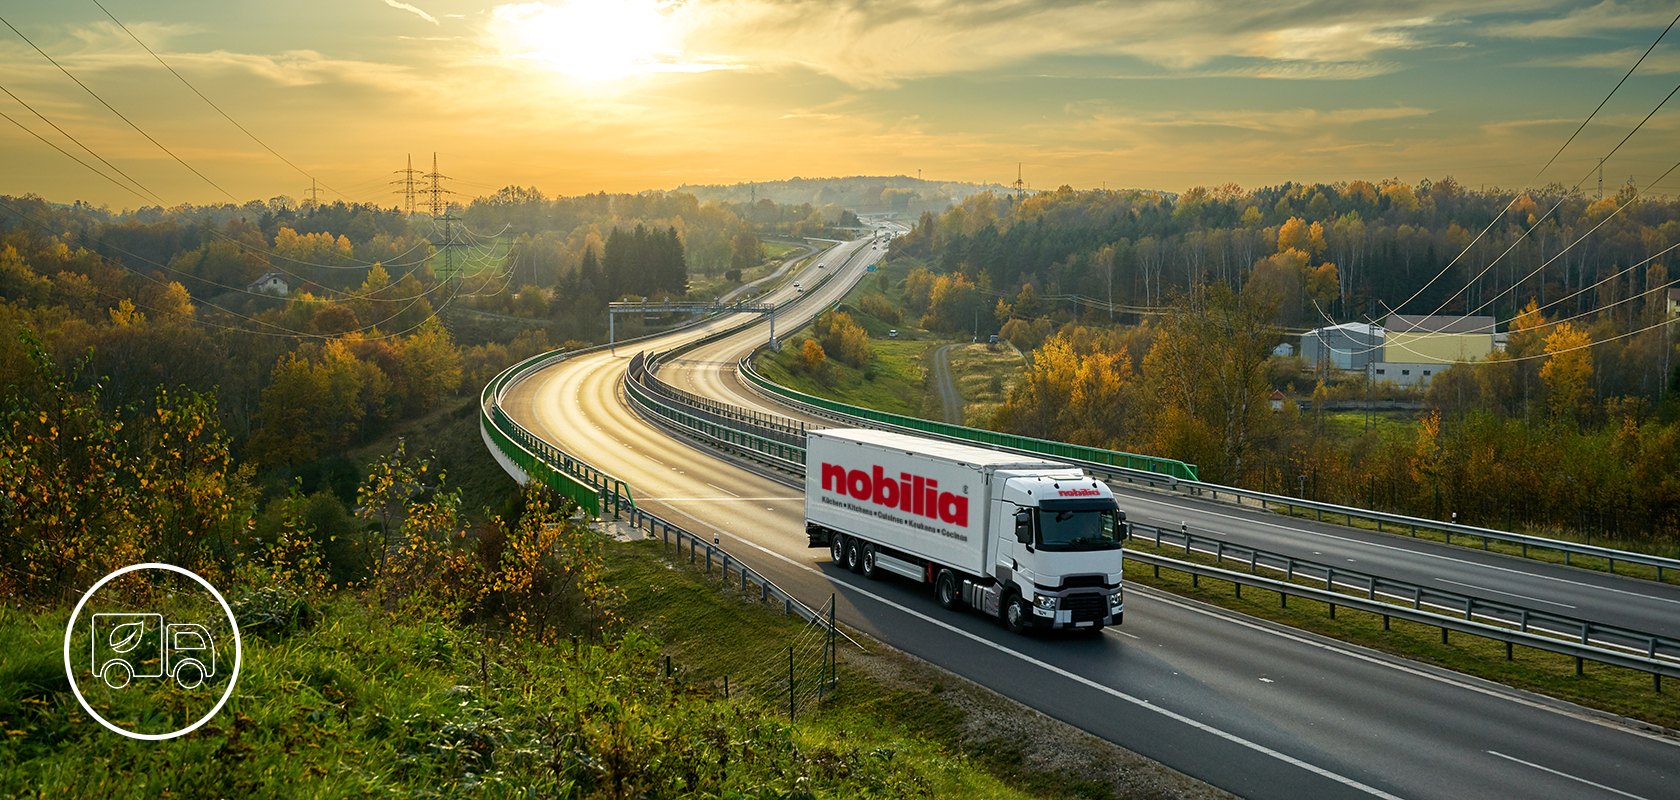 Een vrachtwagen van het merk "nobilia" rijdt op een bochtige snelweg te midden van een levendig herfstlandschap met bladeren en verre glooiende heuvels.